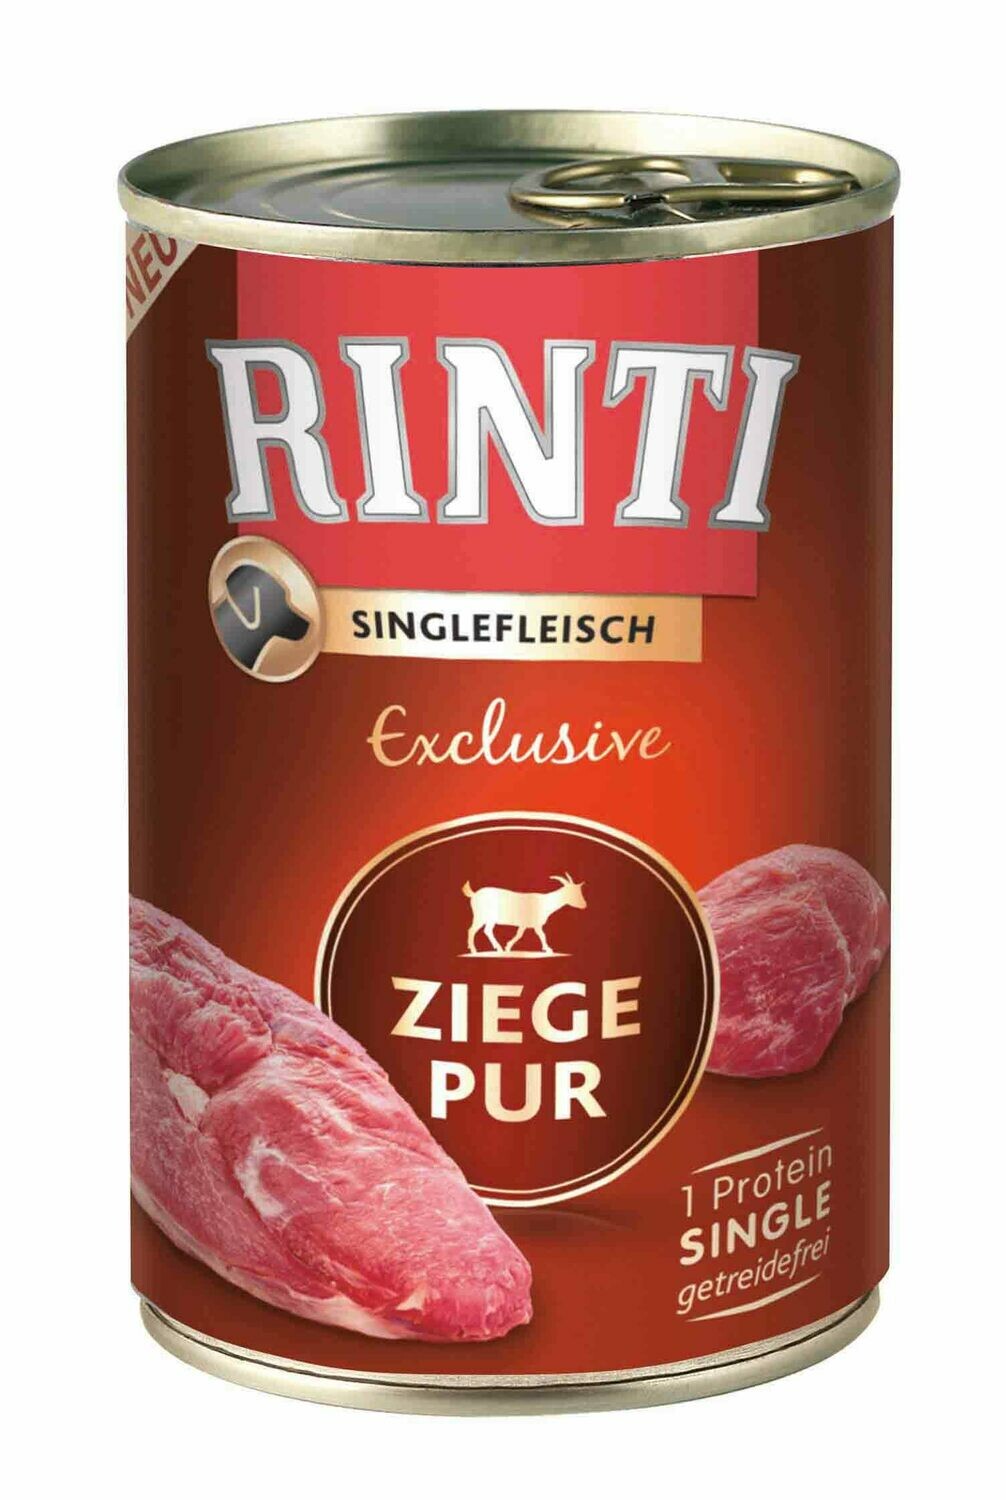 Rinti • Singlefleisch • Exclusive • Ziege Pur